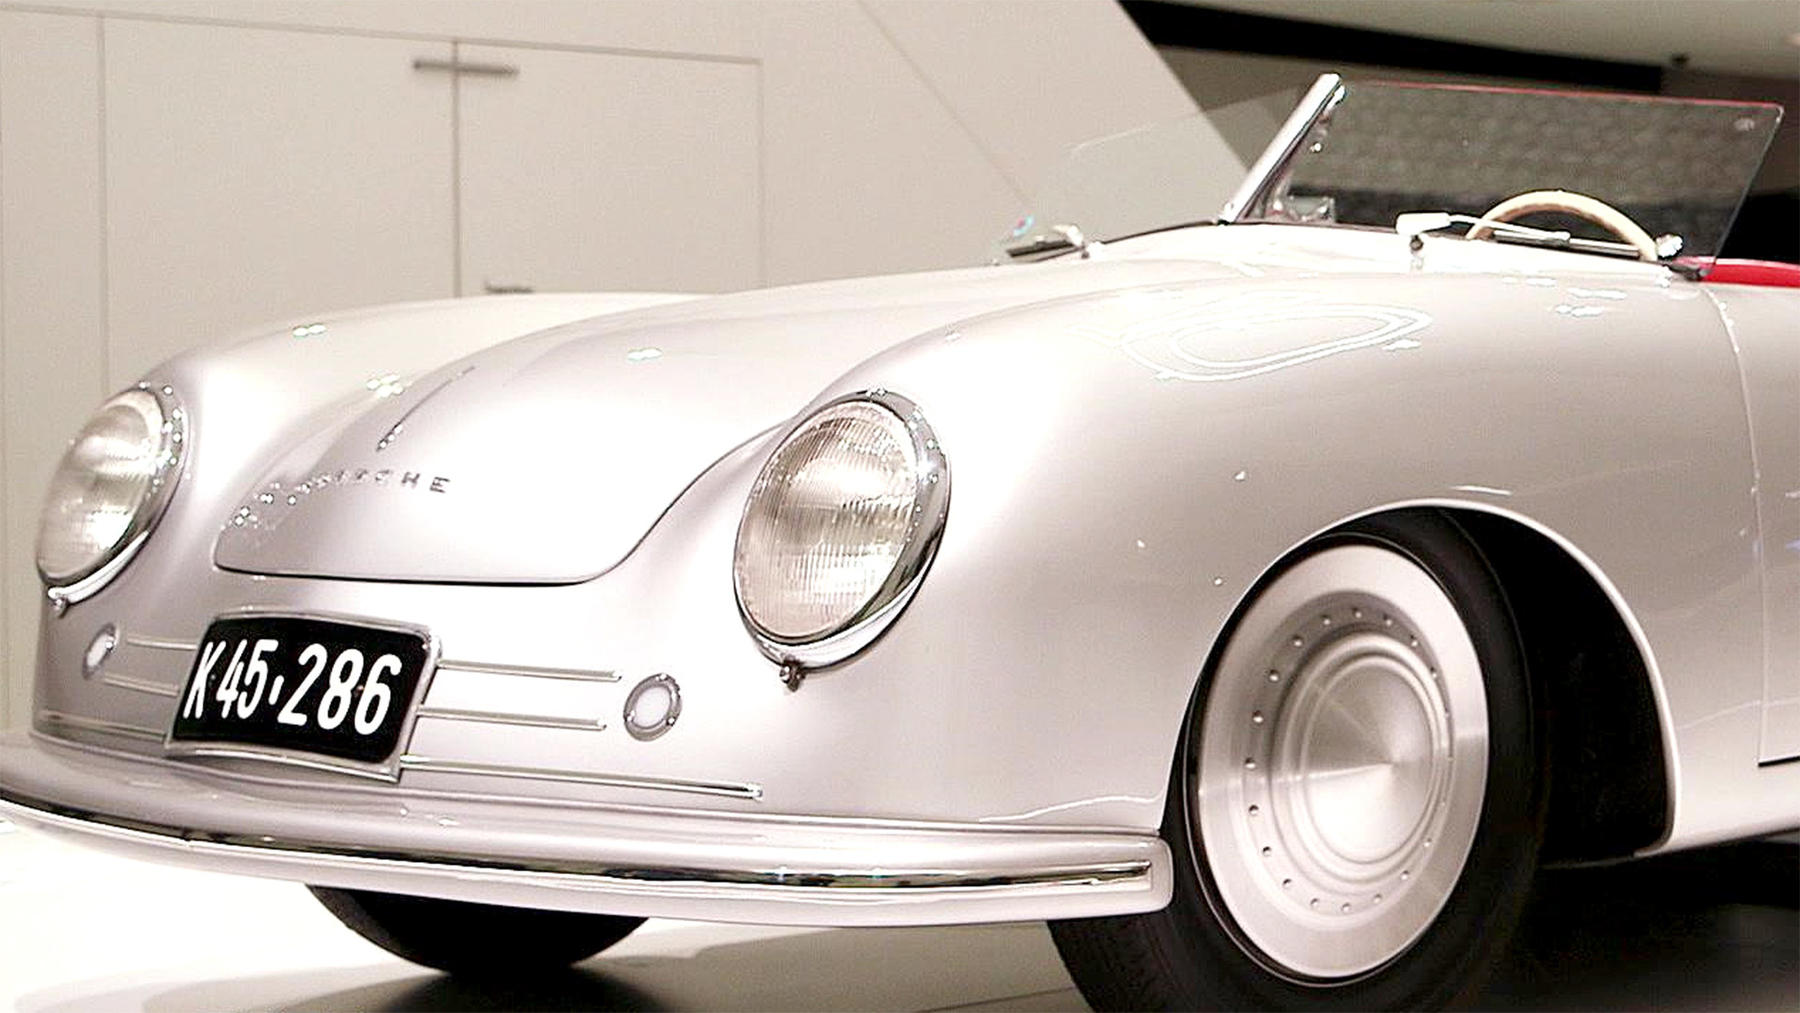 Thema u.a.: Eine Nacht im Porsche-Museum